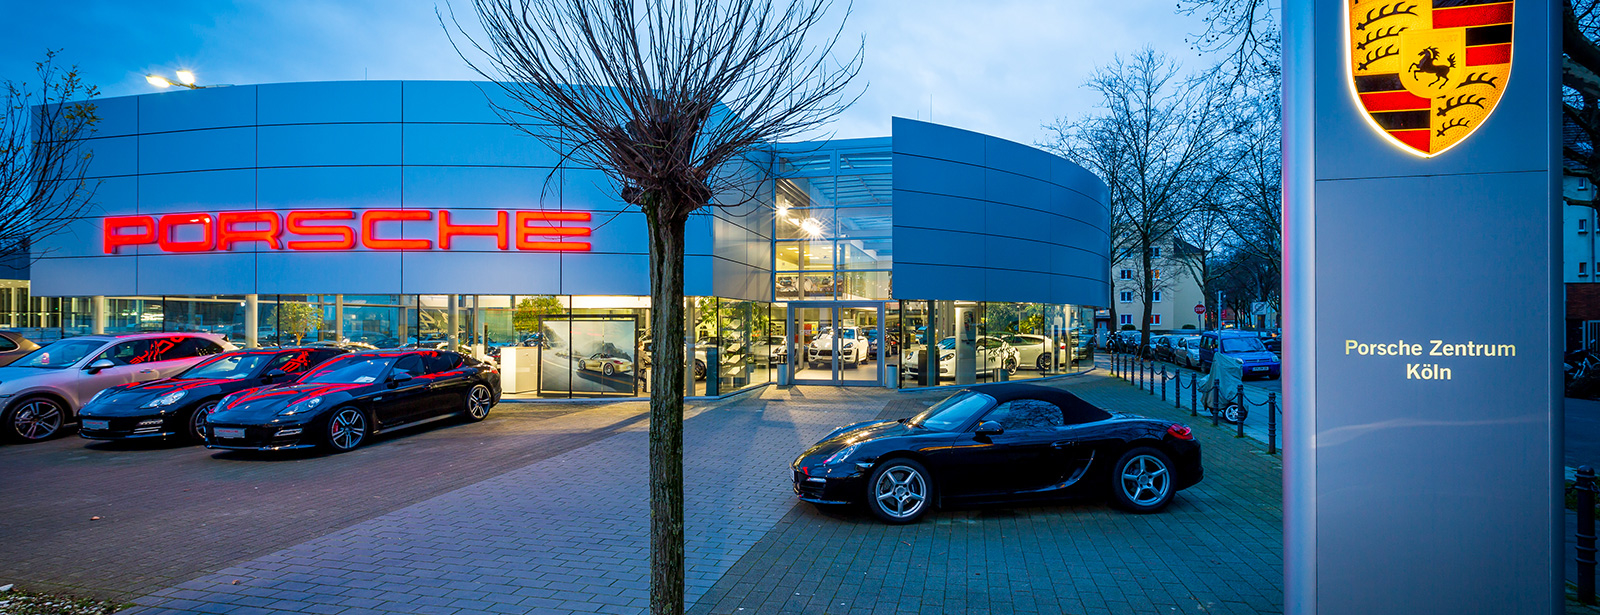 Porsche Zentrum Köln, Fröbelstraße 15 in Köln